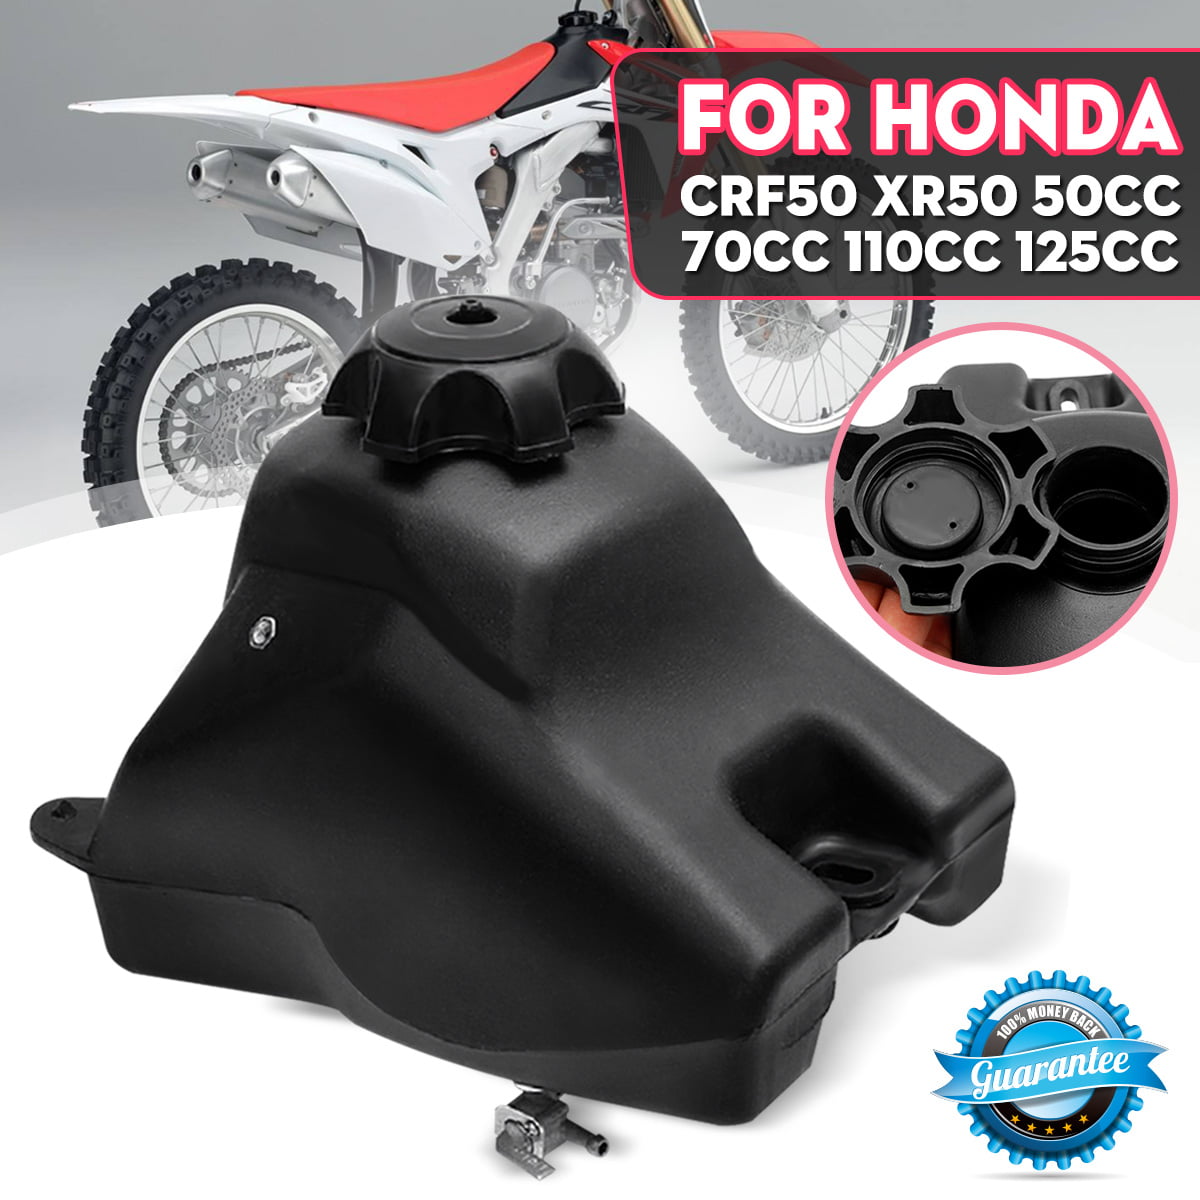 CRF50 Honda Carbon Fiber Fork Guards 50cc 